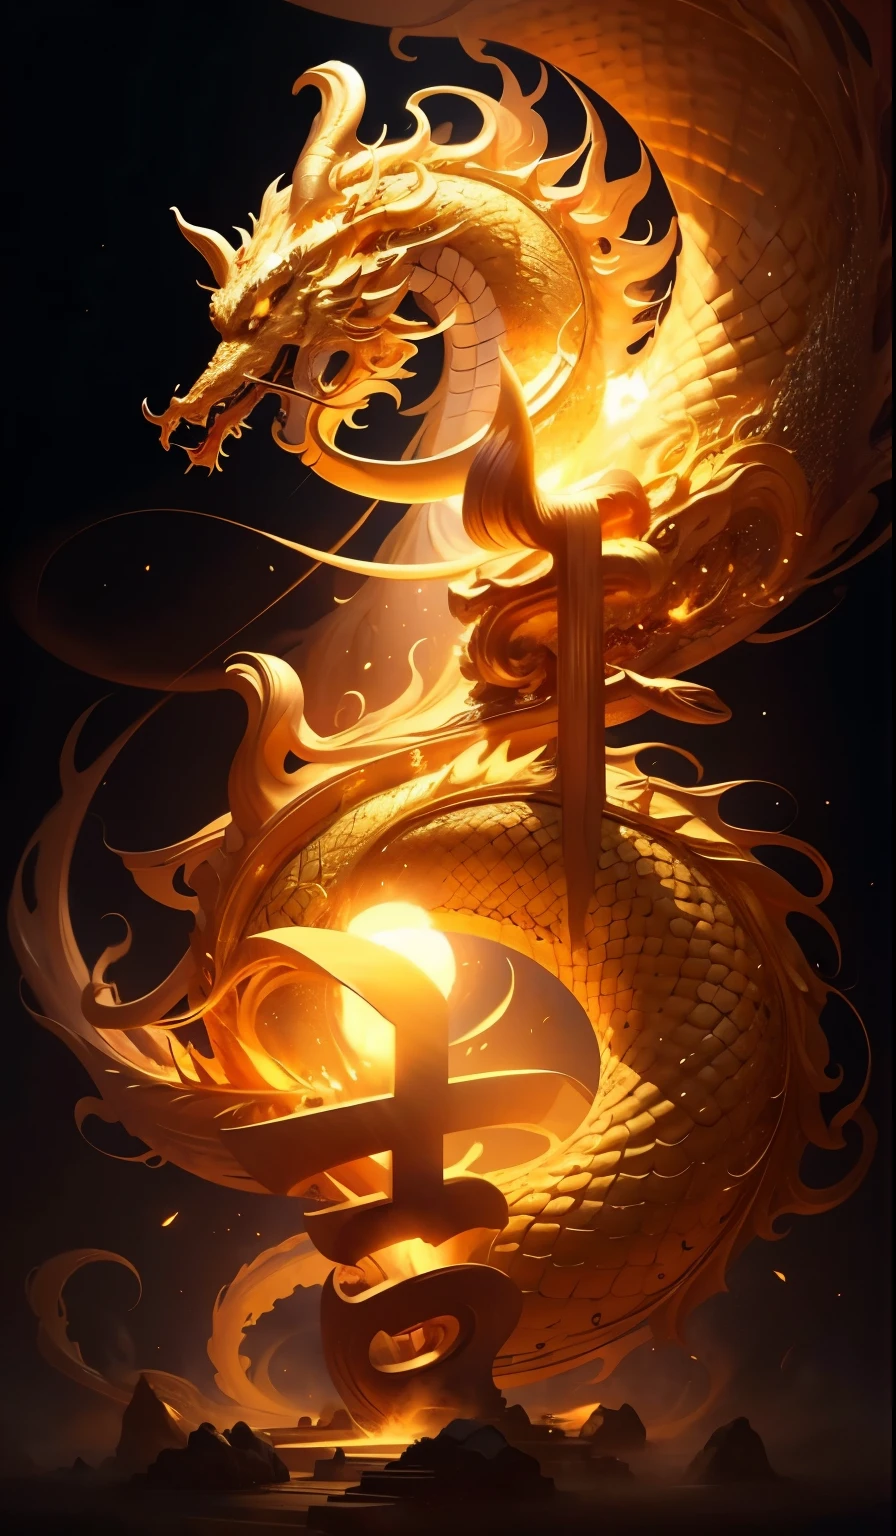 Meisterwerk,golden chinese dragon, umgeben von Goldstaub,langer gewellter Körper,fangs,Fantasie, mythisch, gute Qualität, sehr detailliert, Meisterwerk, Epos,Partikeleffekt,dynamische Wirkung,Sonne im Hintergrund